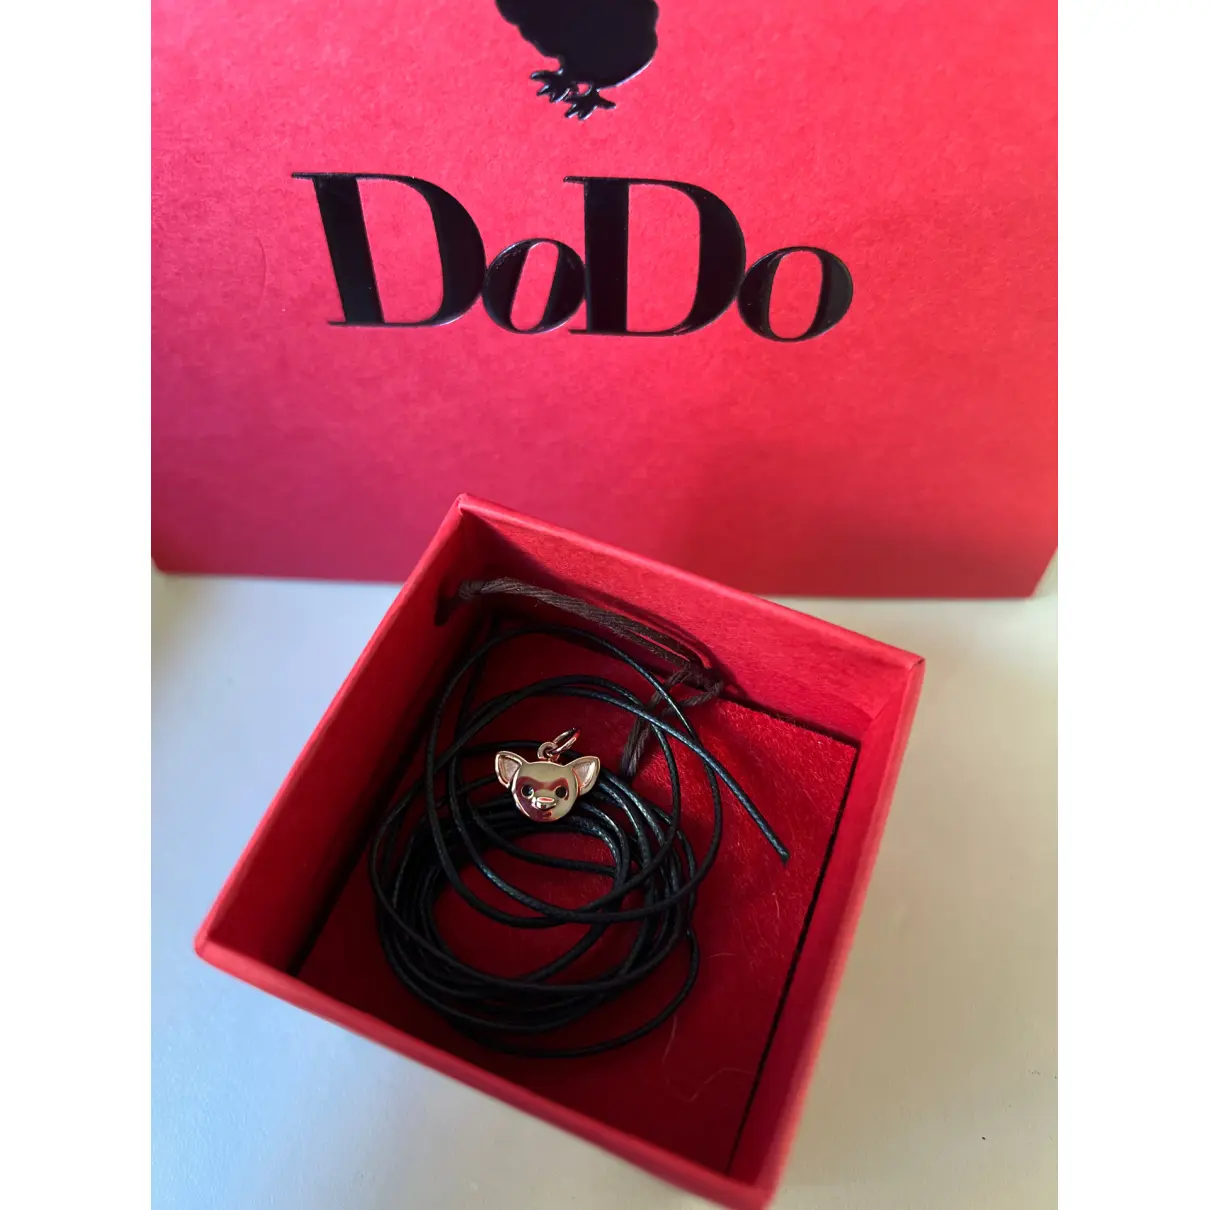 Buy Dodo Dodo pink gold pendant online